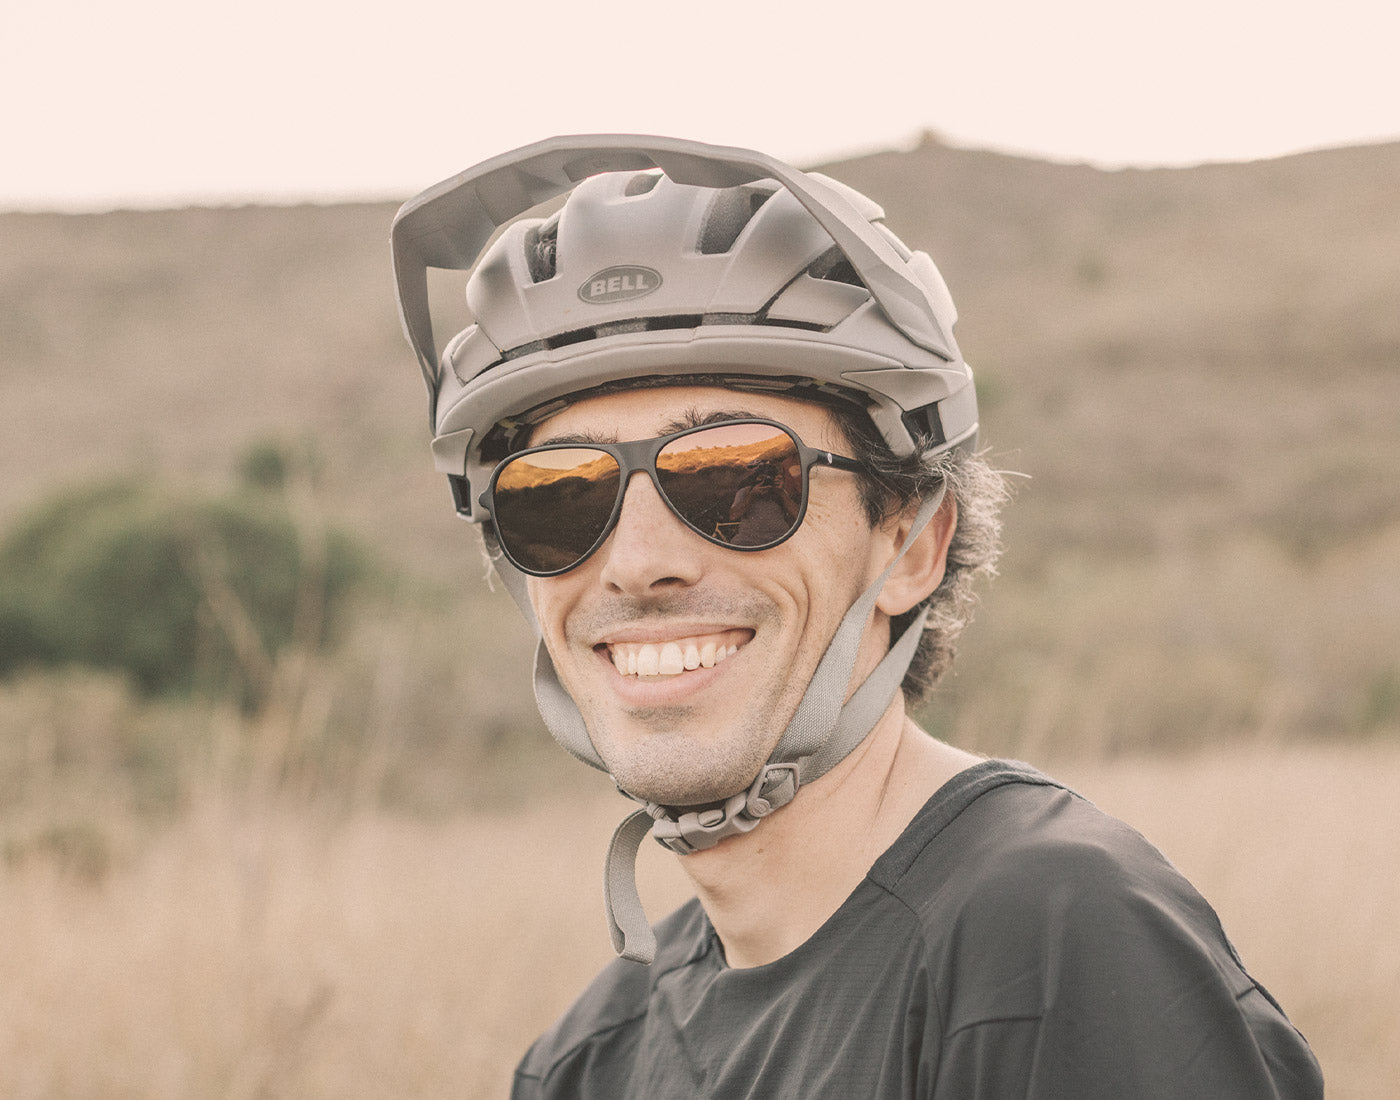 guy in bike helmet smiling wearing sunski foxtrot sunglasses